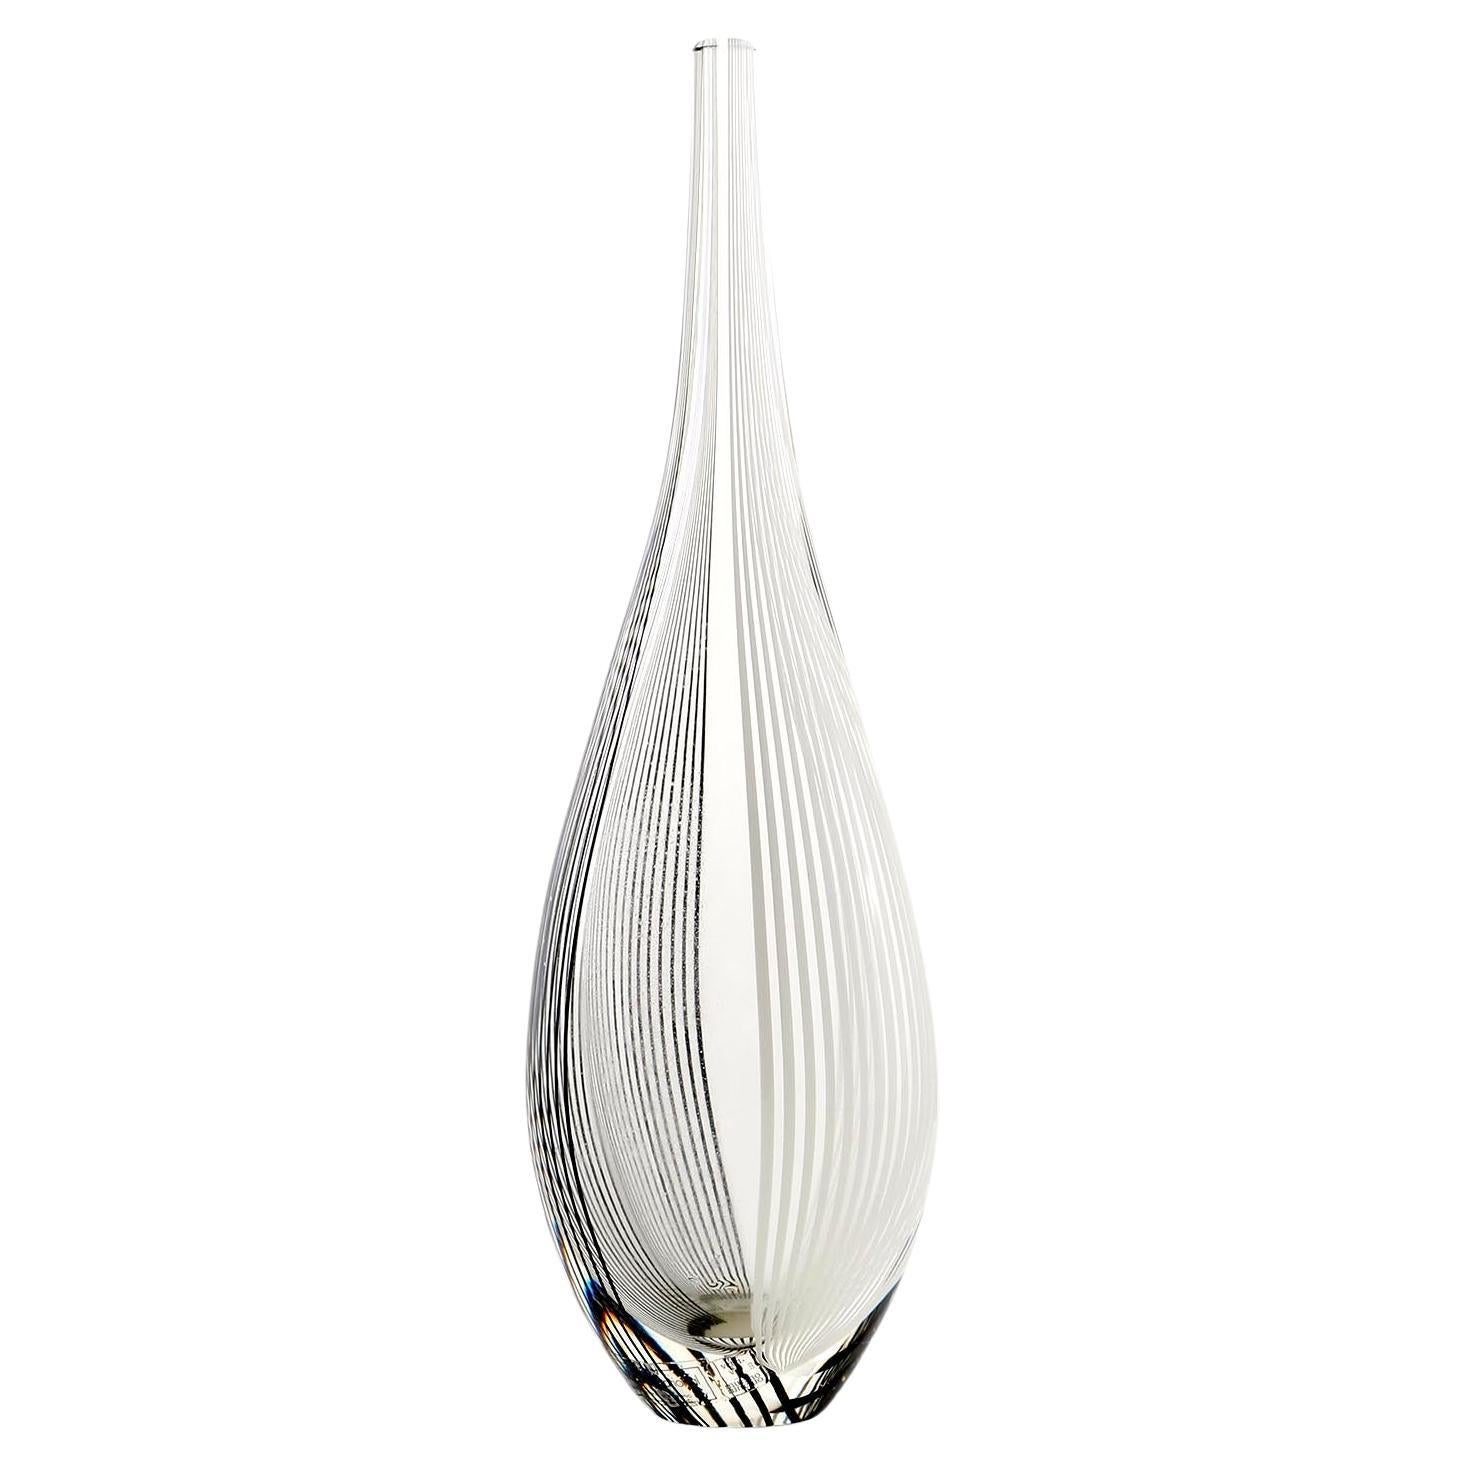 Magnifique vase en verre italien de Lino Tagliapietra pour Effetre International, Murano, 1986.
Verre transparent avec bandes noires et blanches.
Le vase porte encore l'étiquette d'Effet International.
Il est également gravé en bas avec Lino